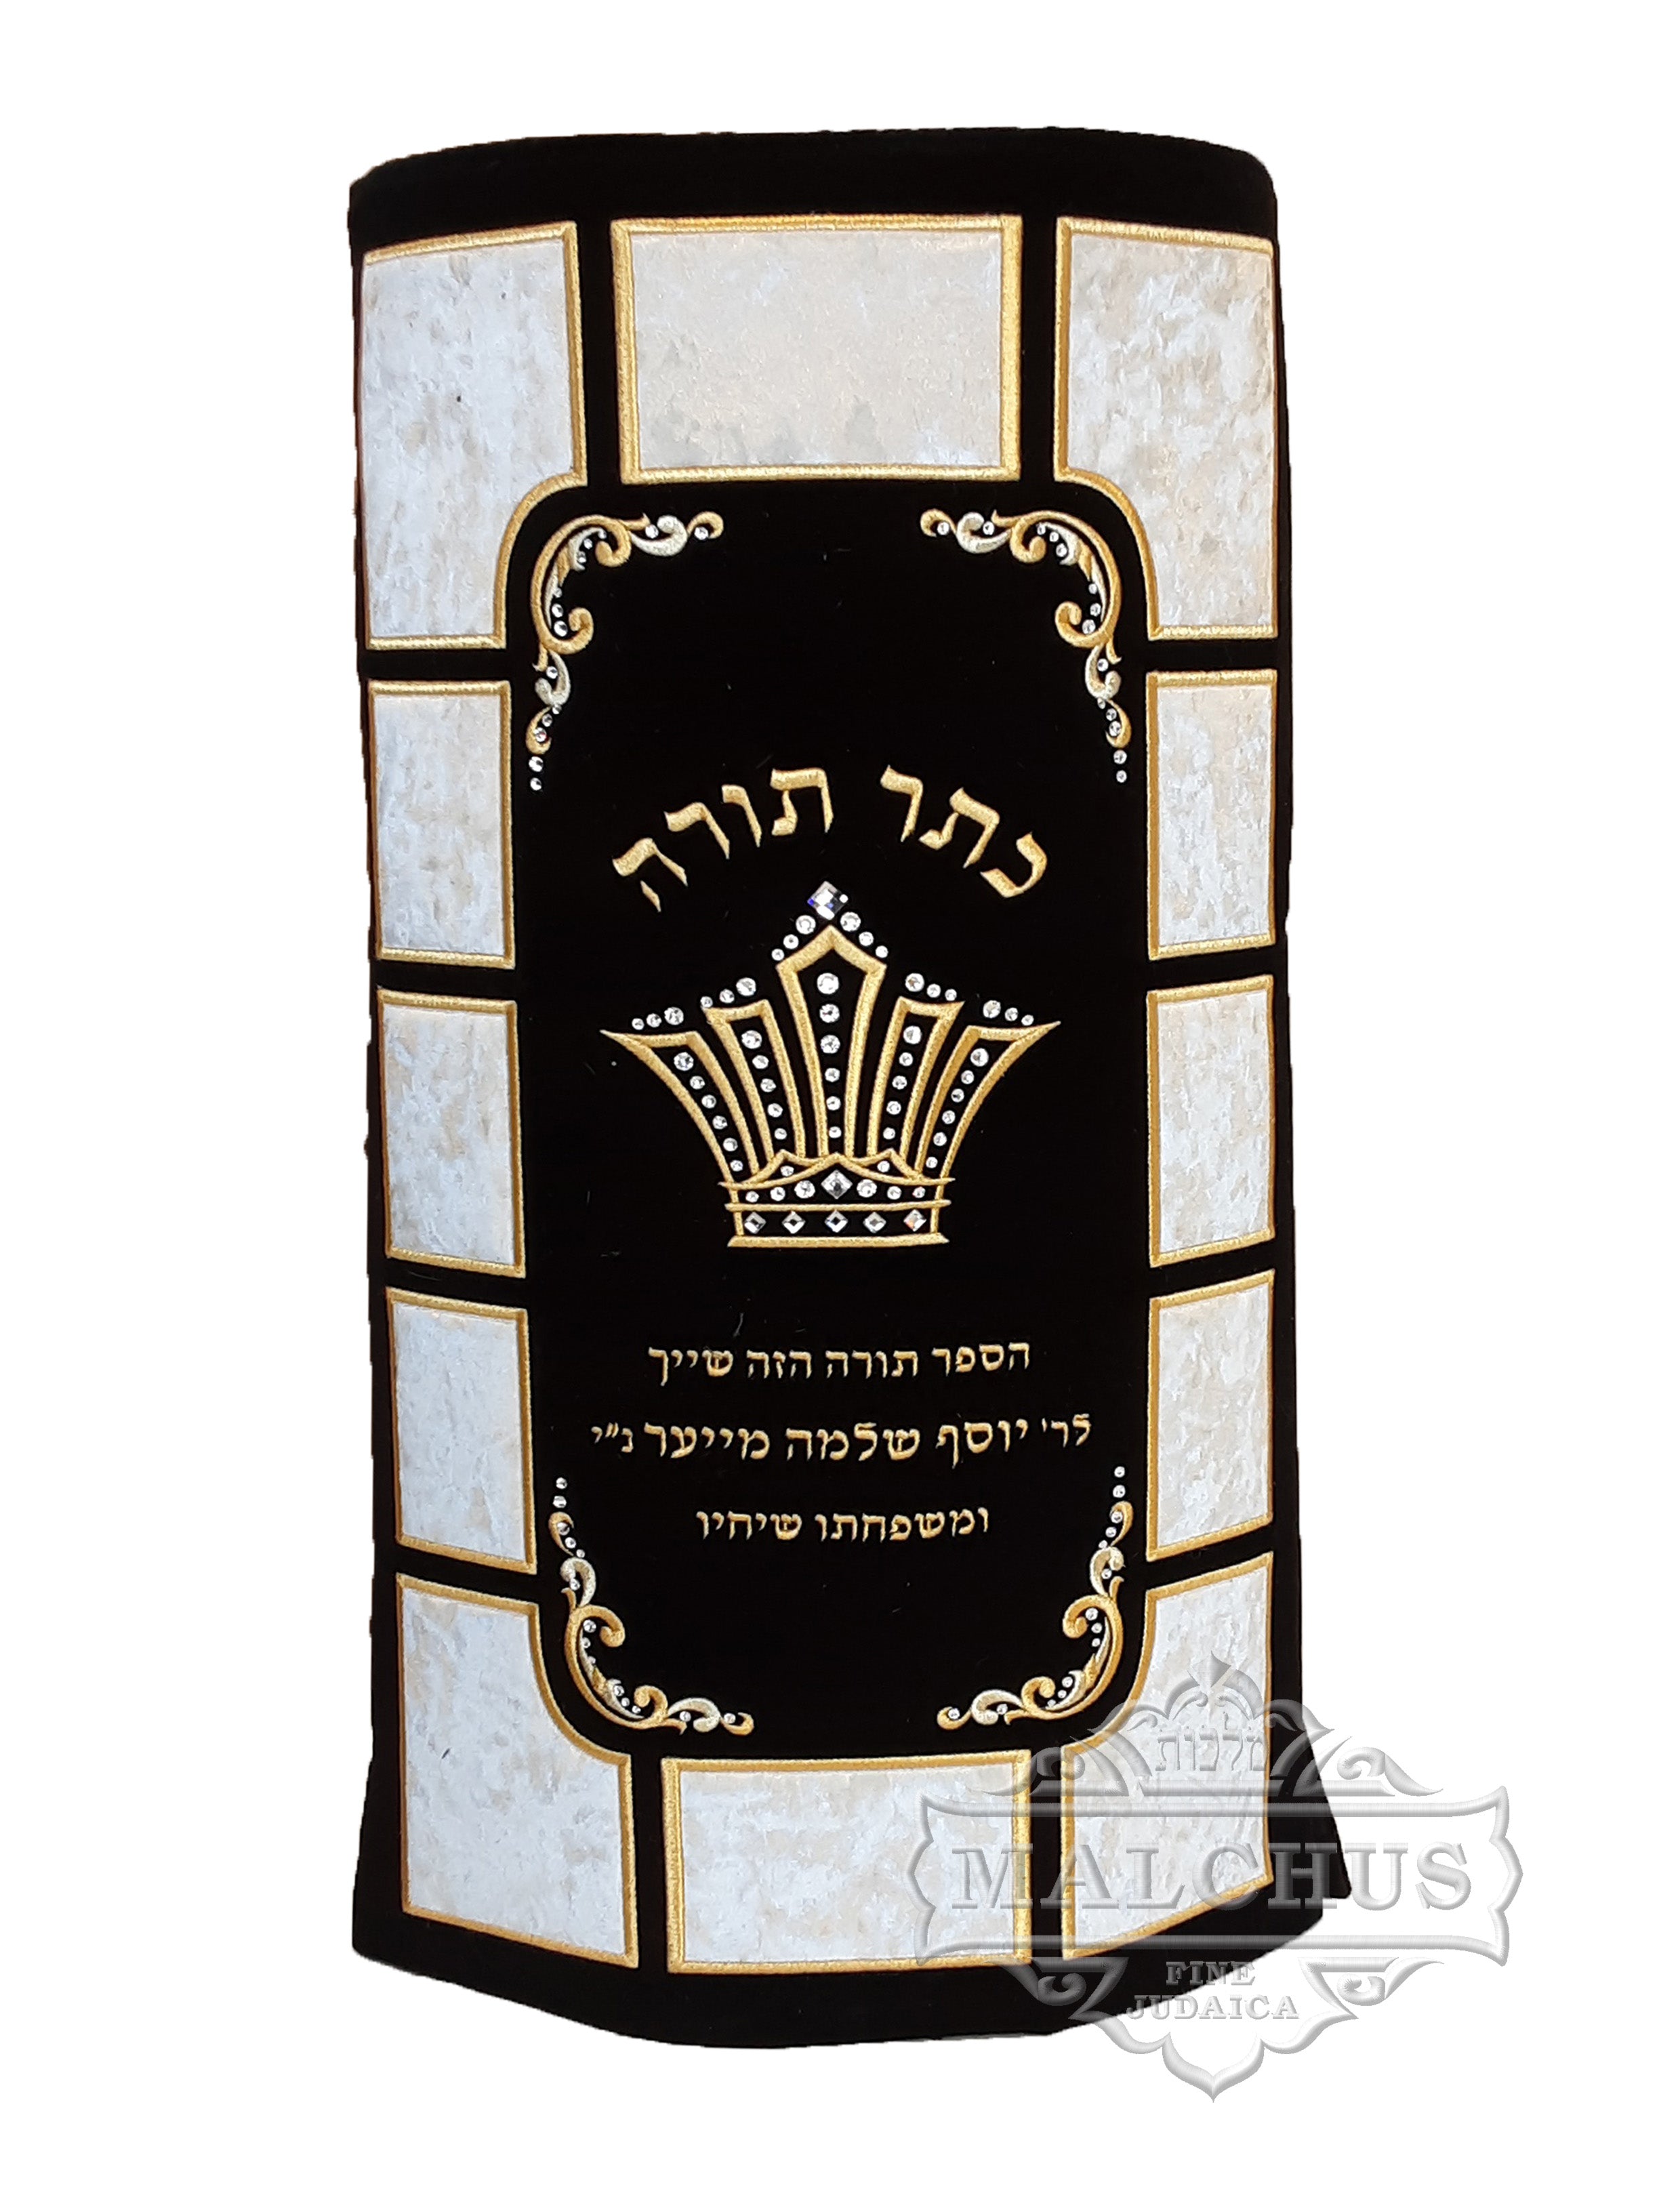 Sefer Torah Mantel #39-3